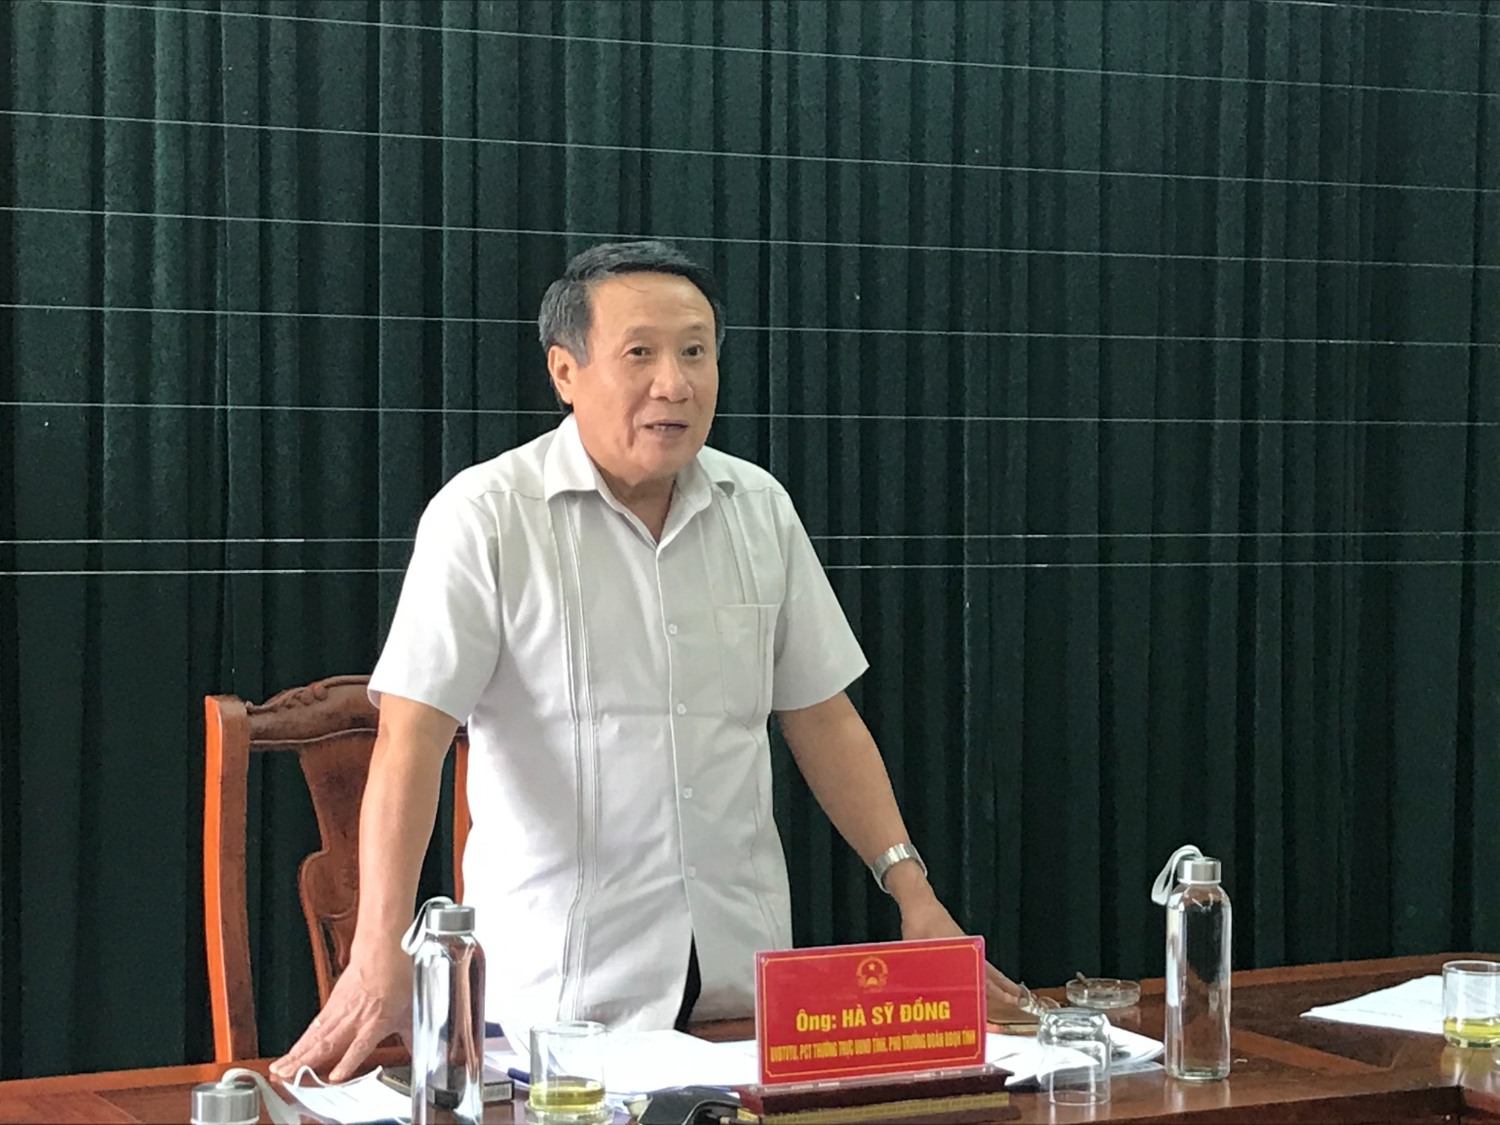 Phó Chủ tịch Thường trực UBND tỉnh Hà Sỹ Đồng kết luận buổi làm việc